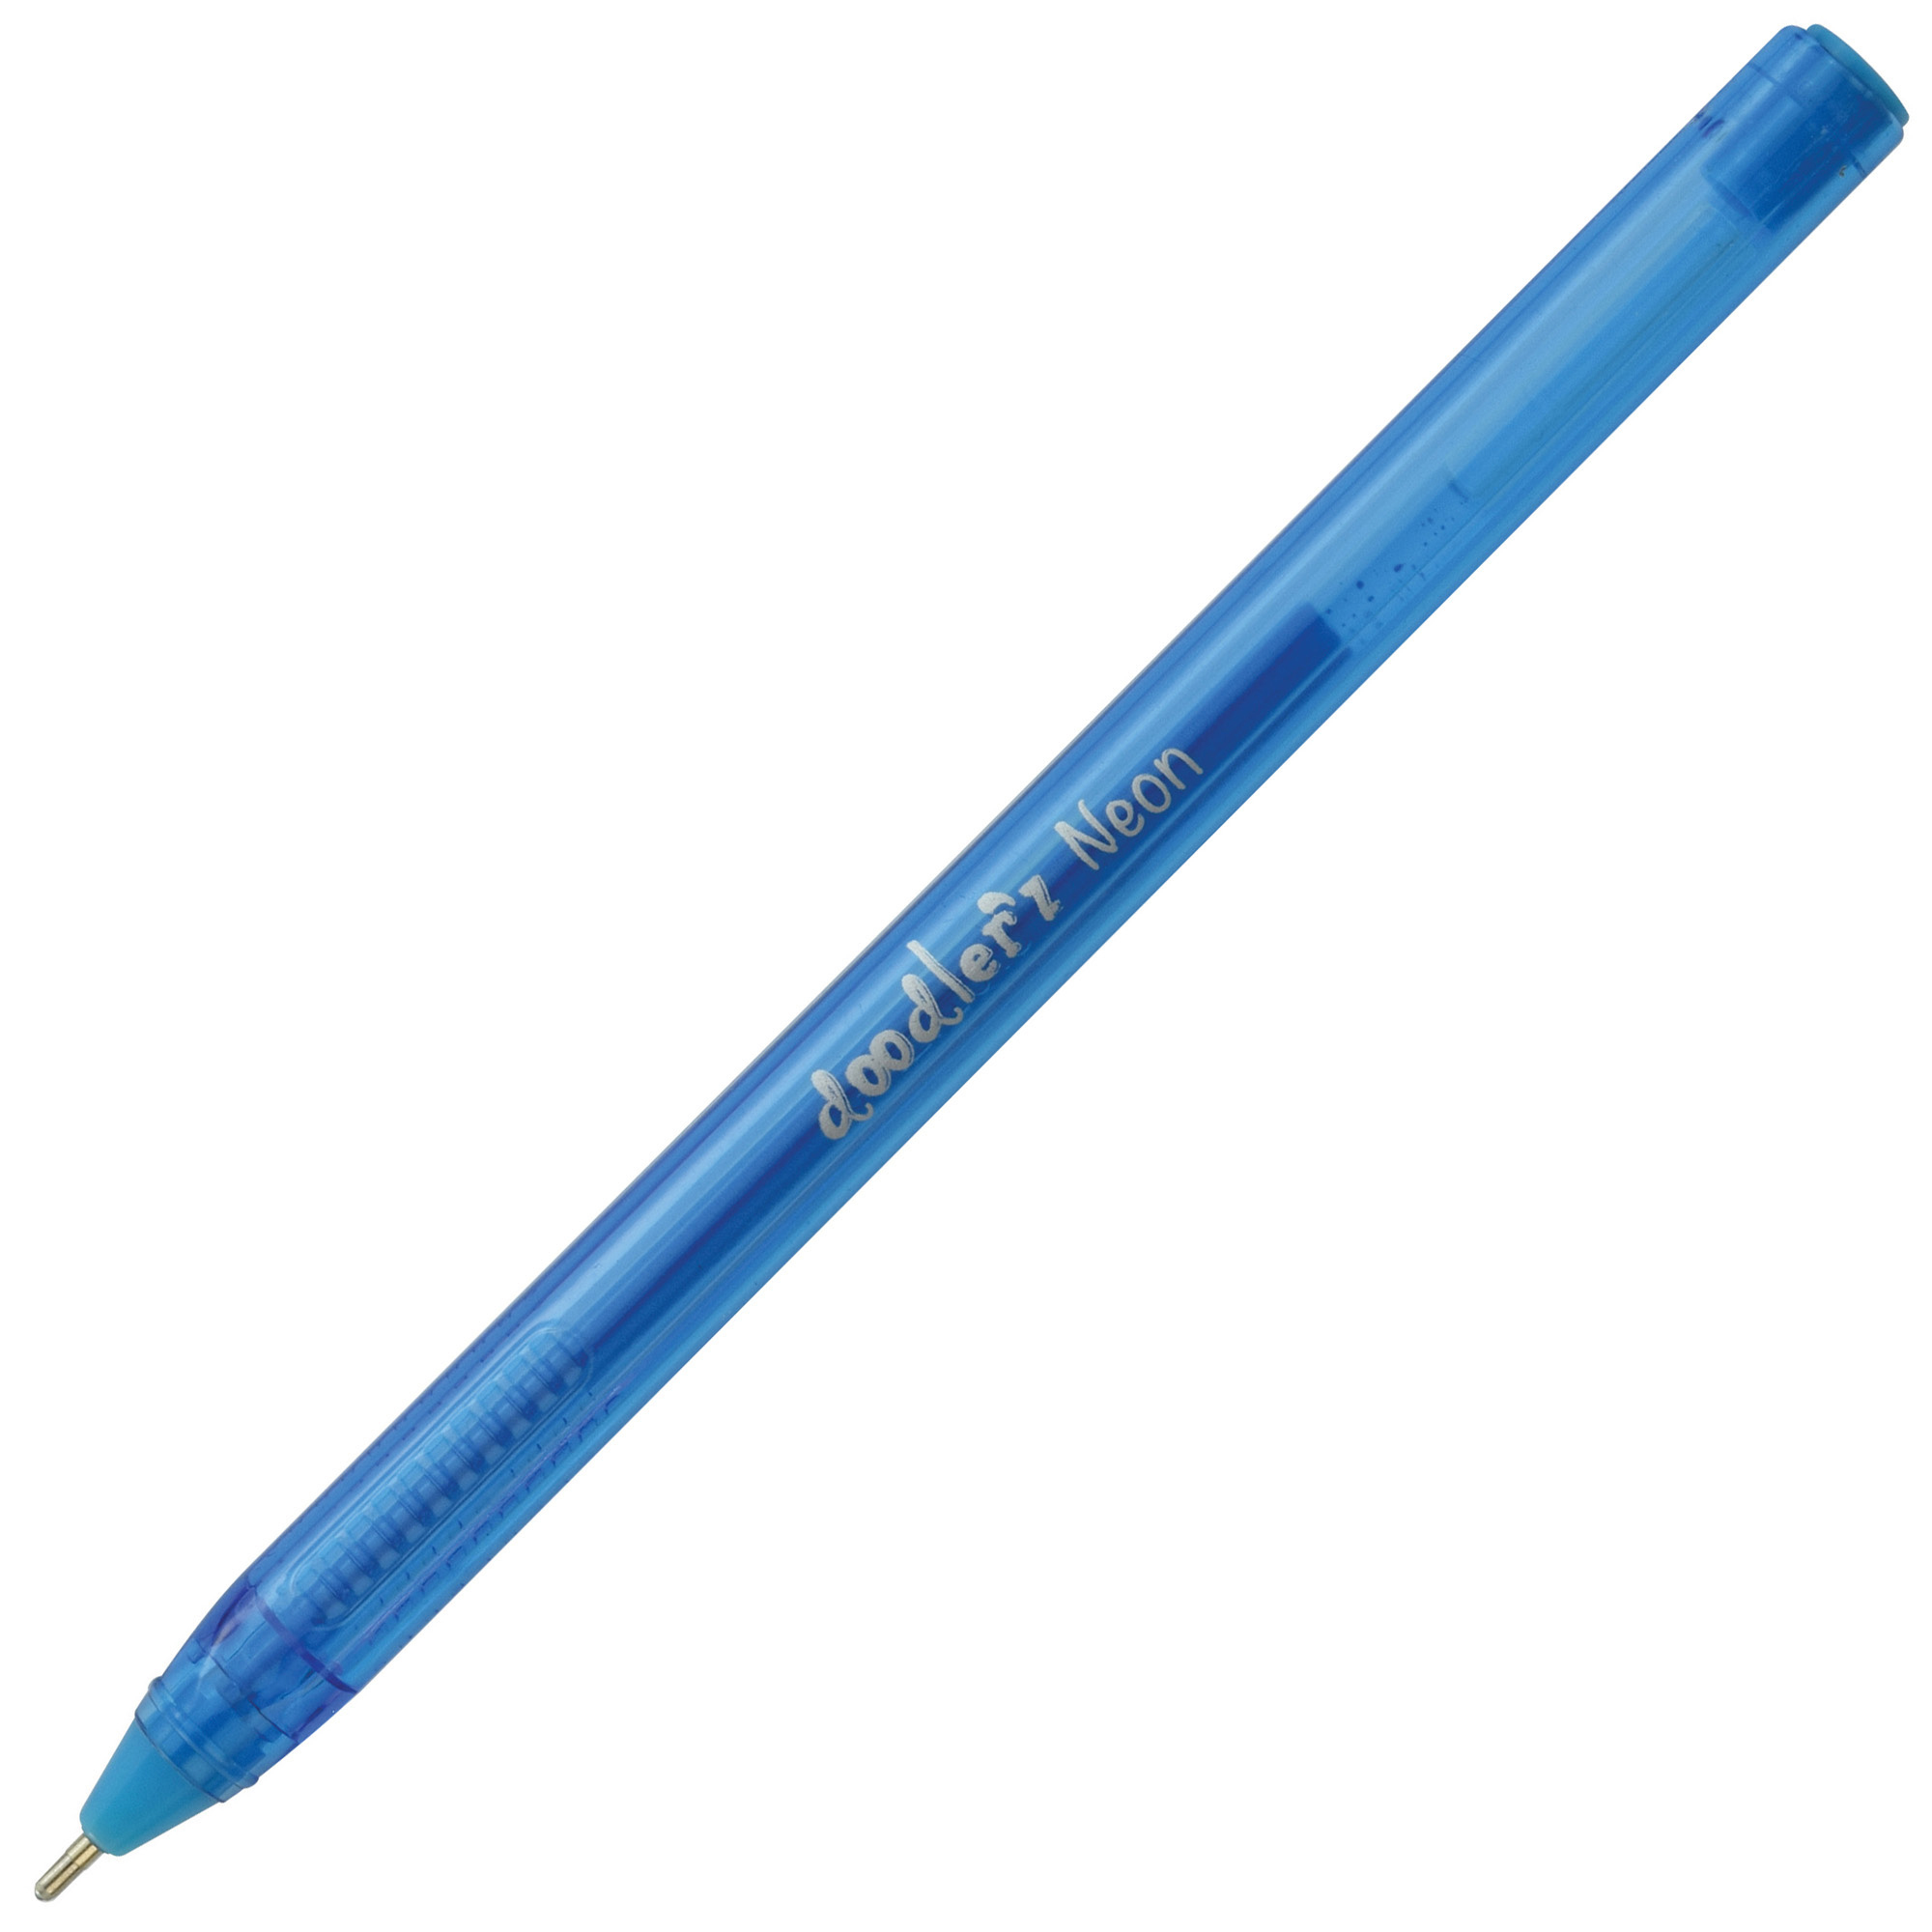 Zebra Doodlerz Gel Stick Pens Pack Of 60 Bold Point 1.0 mm